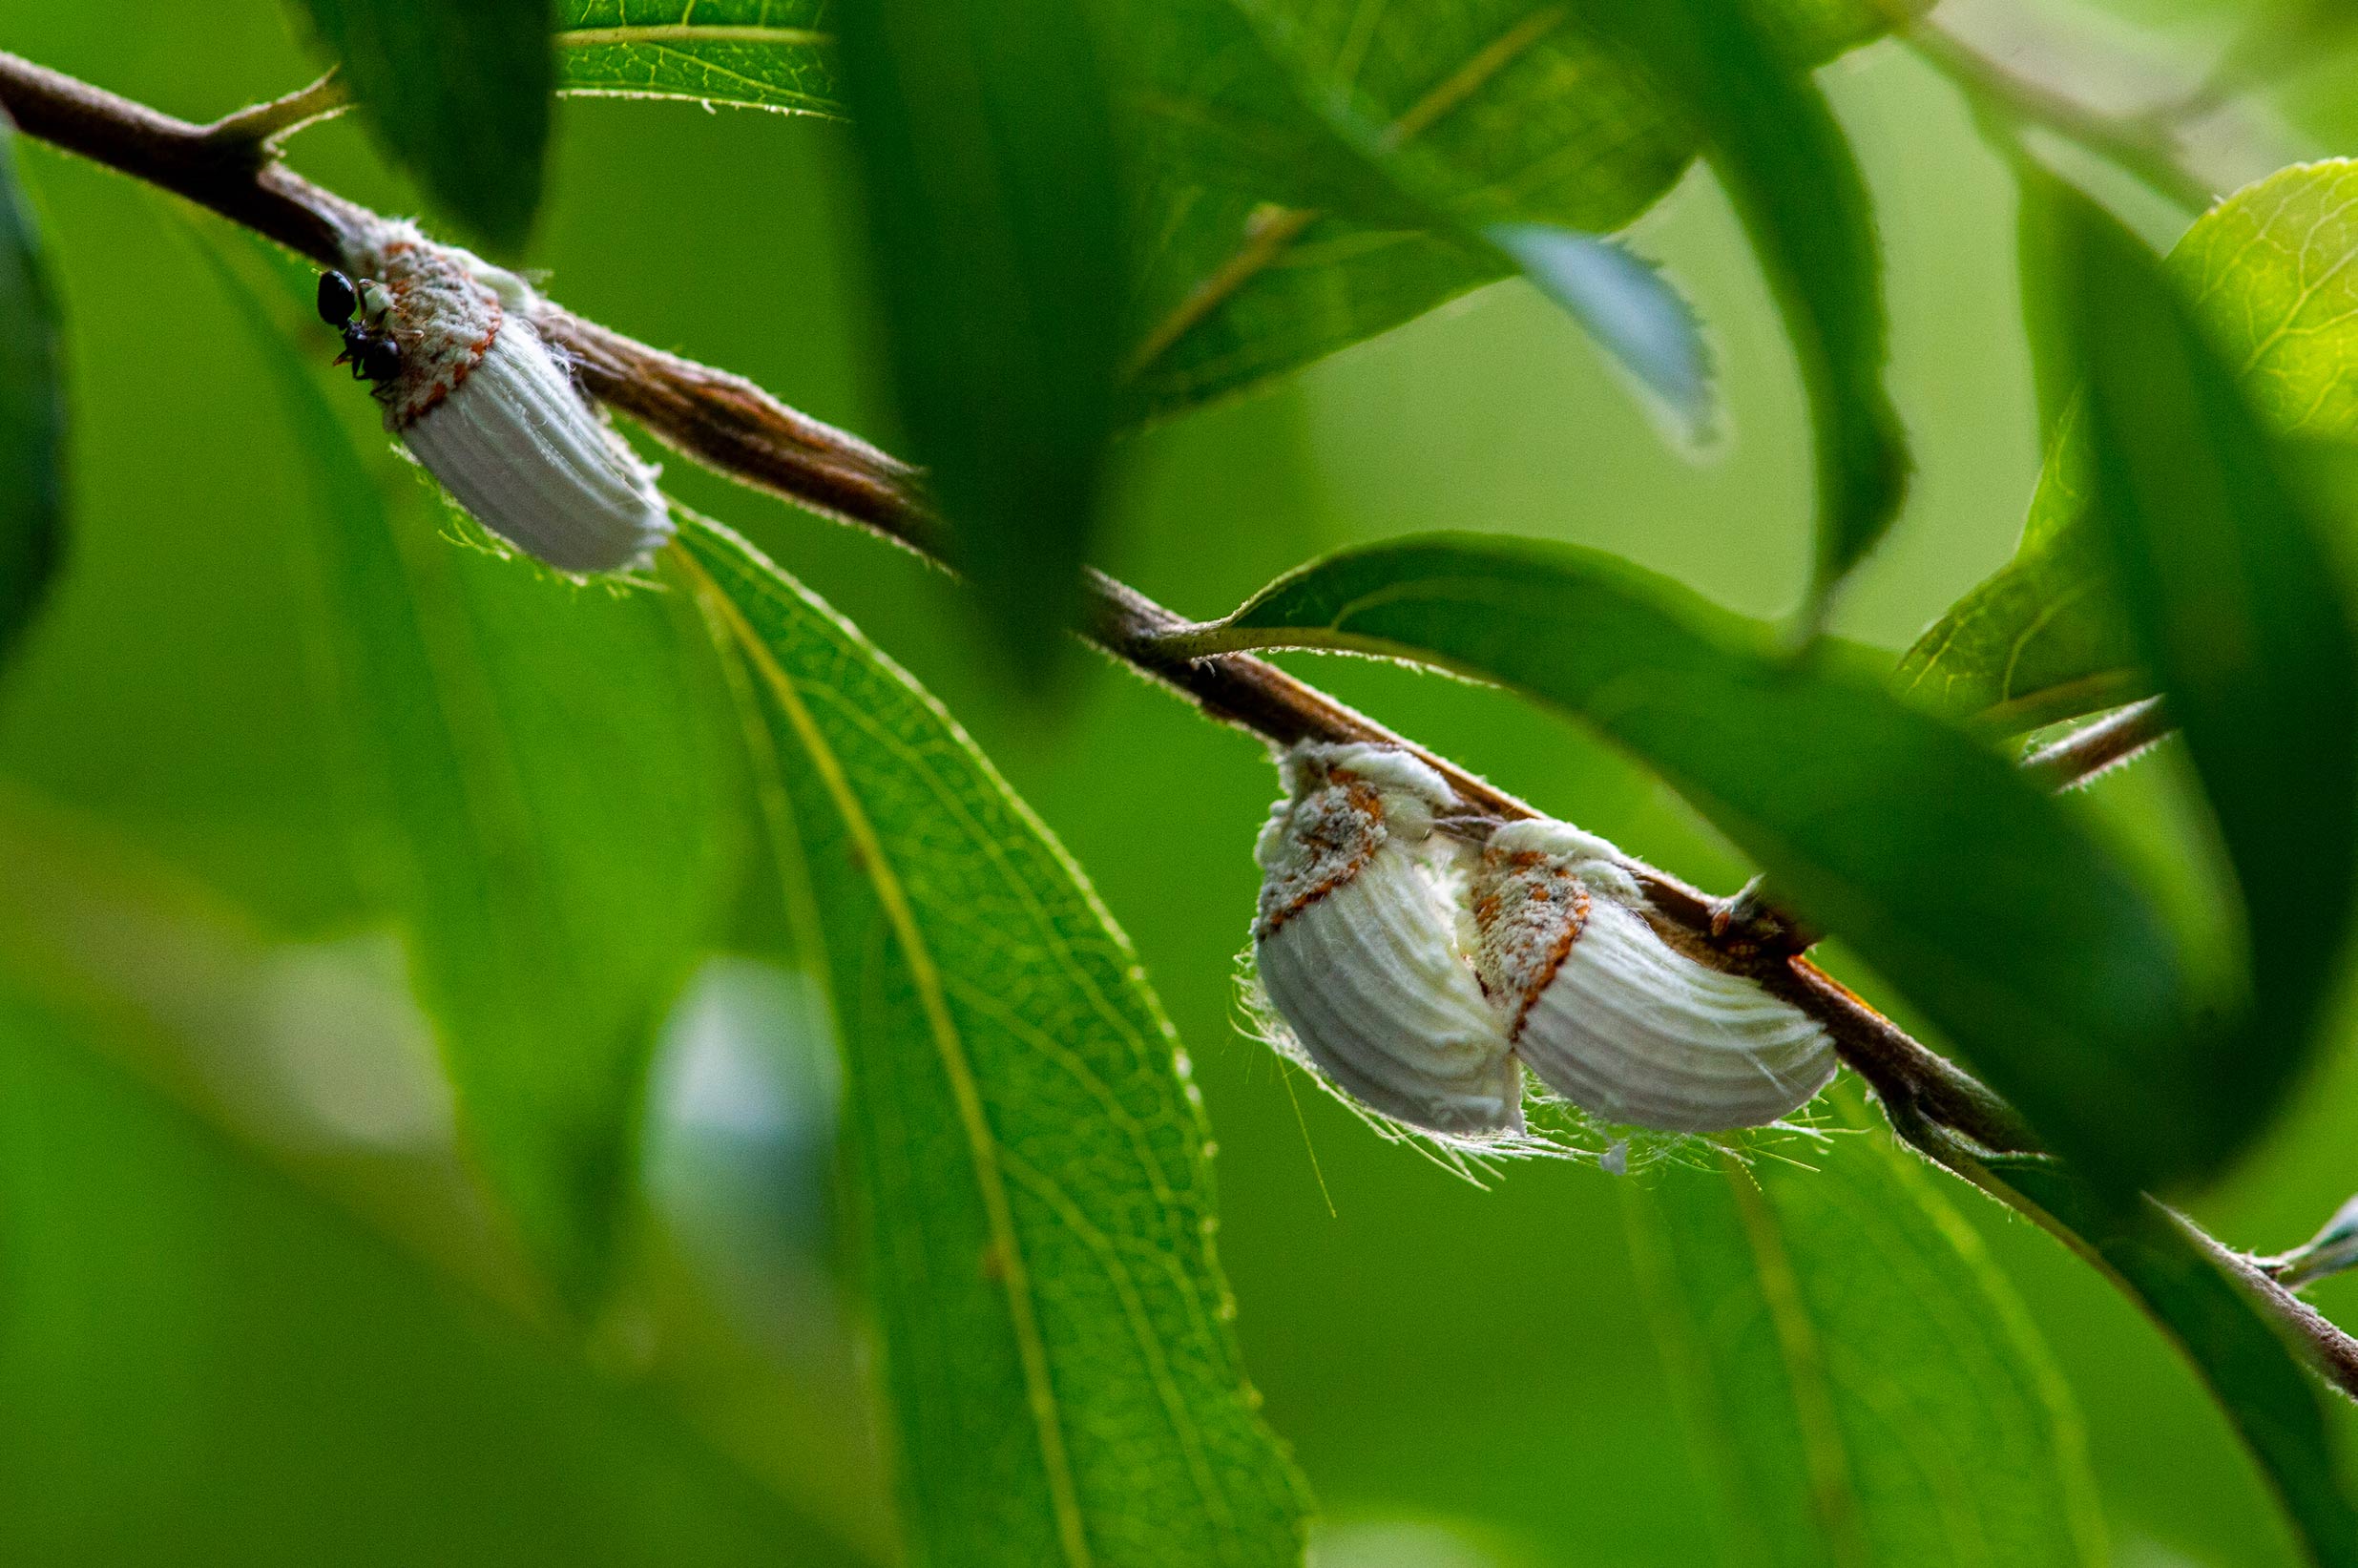 イセリアカイガラムシ ワタフキカイガラムシ 虫の写真と生態なら昆虫写真図鑑 ムシミル